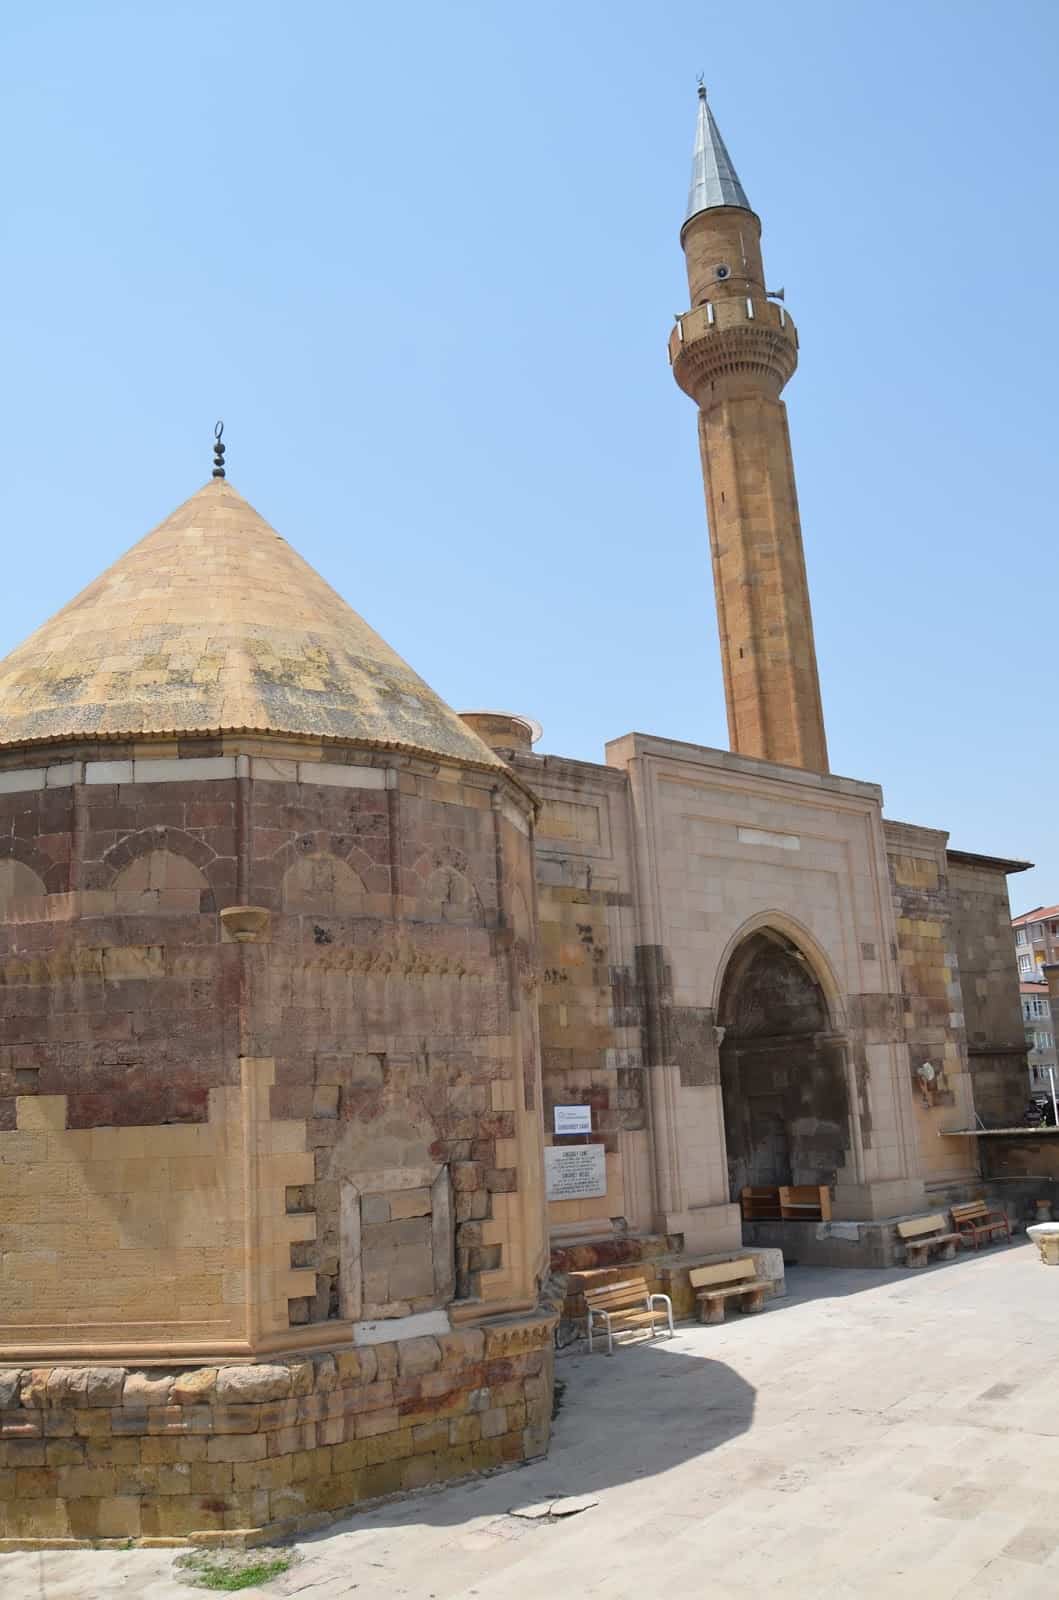 Sungur Bey Mosque in Niğde, Turkey